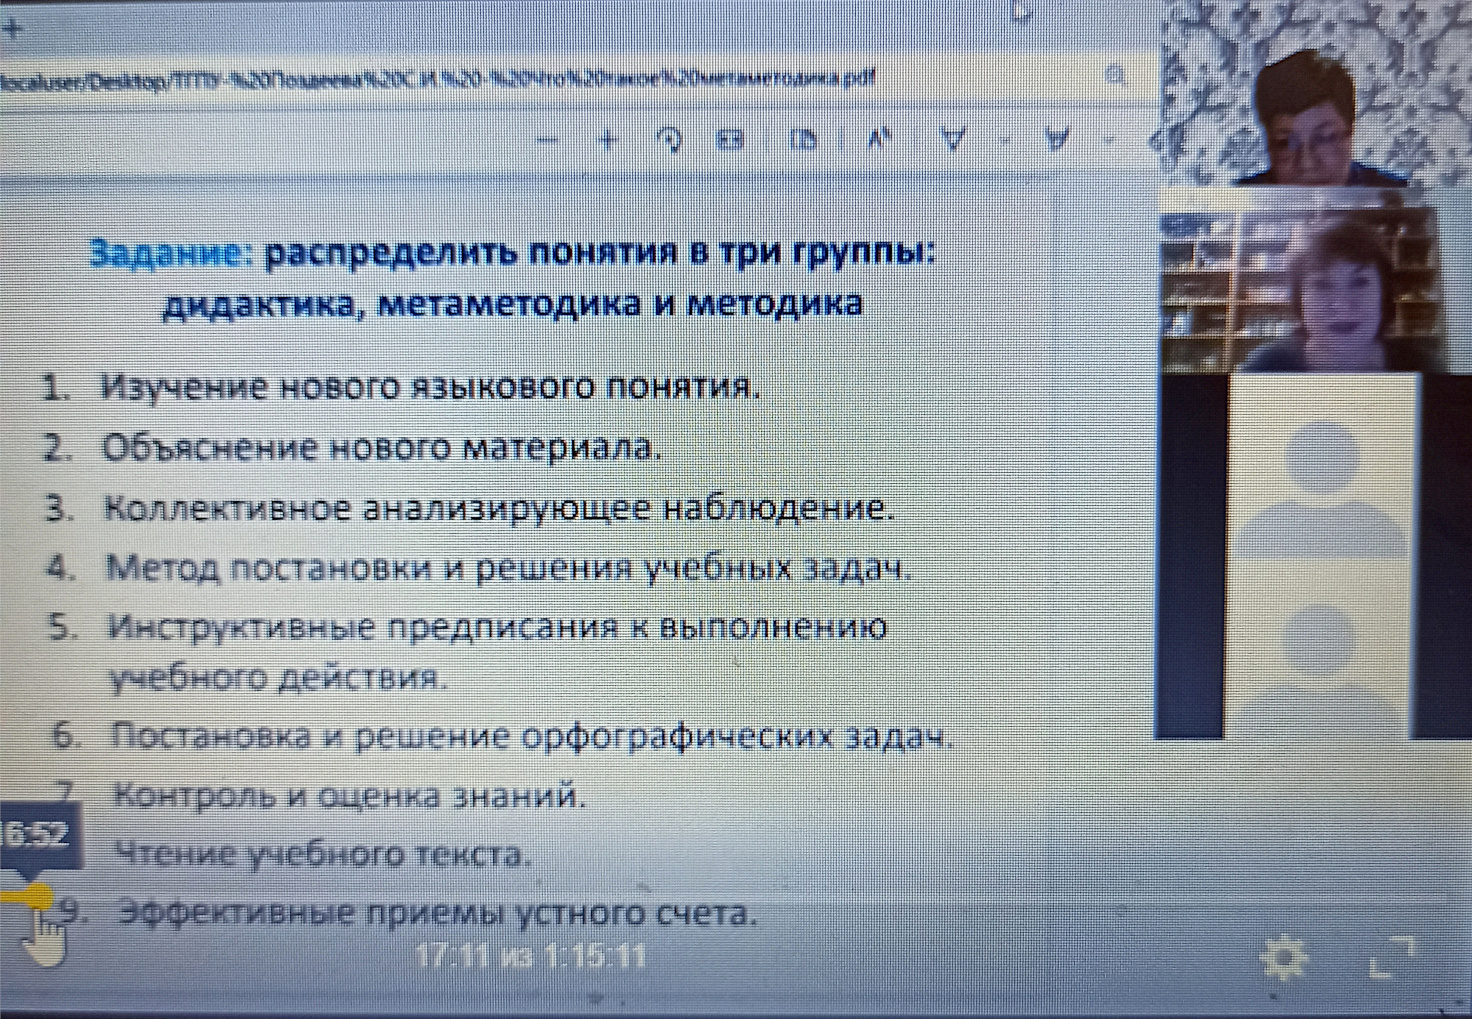 Вебинар по метаметодике в Иркутском государственном университете